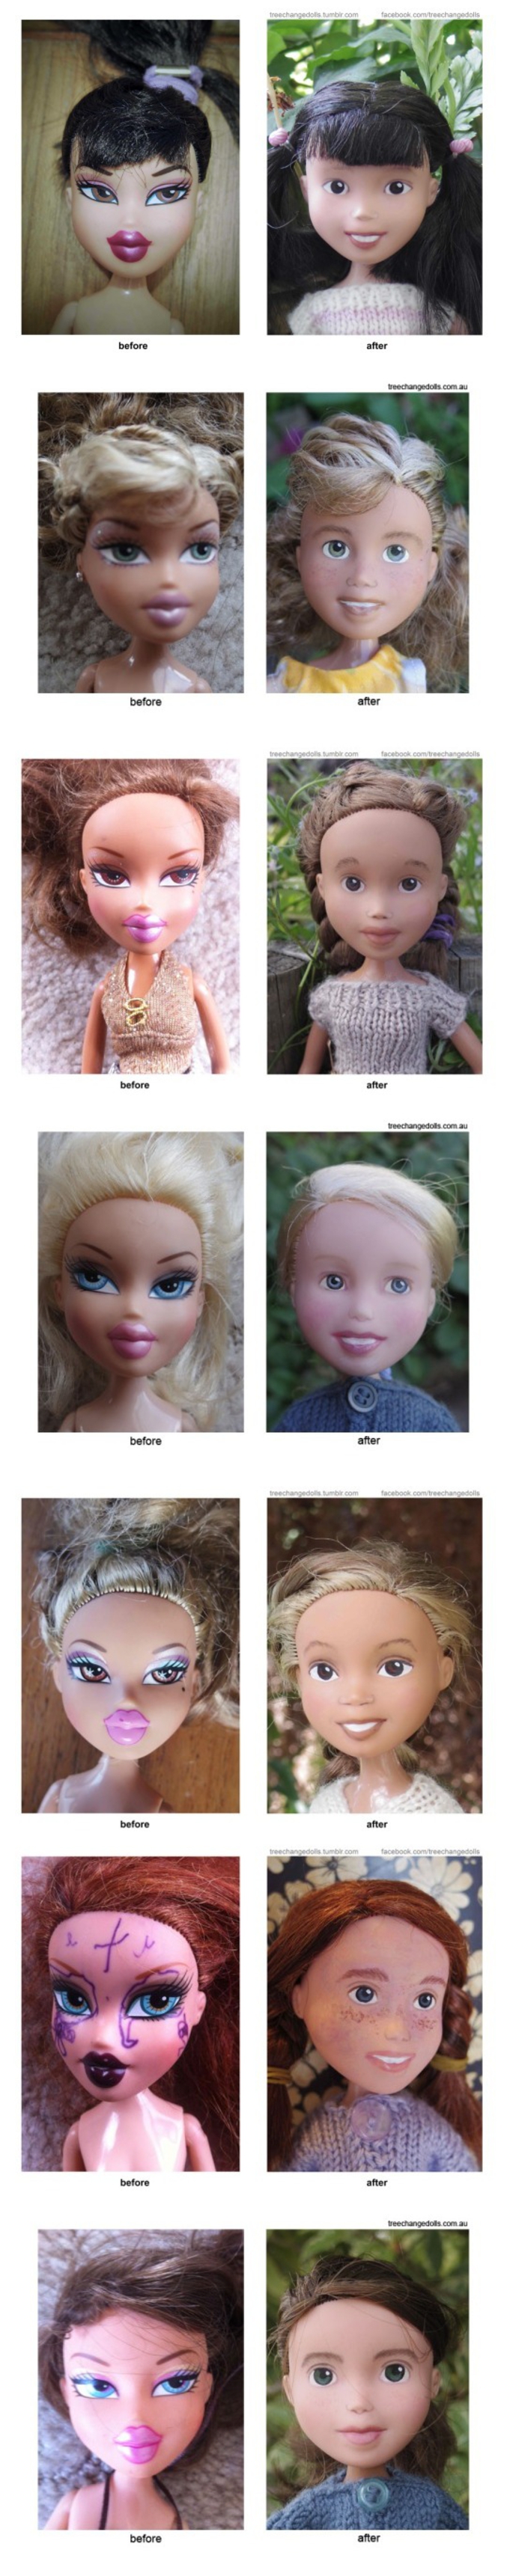 Elle transforme des poupées pouffiasses en vraie petites filles.
http://treechangedolls.tumblr.com/